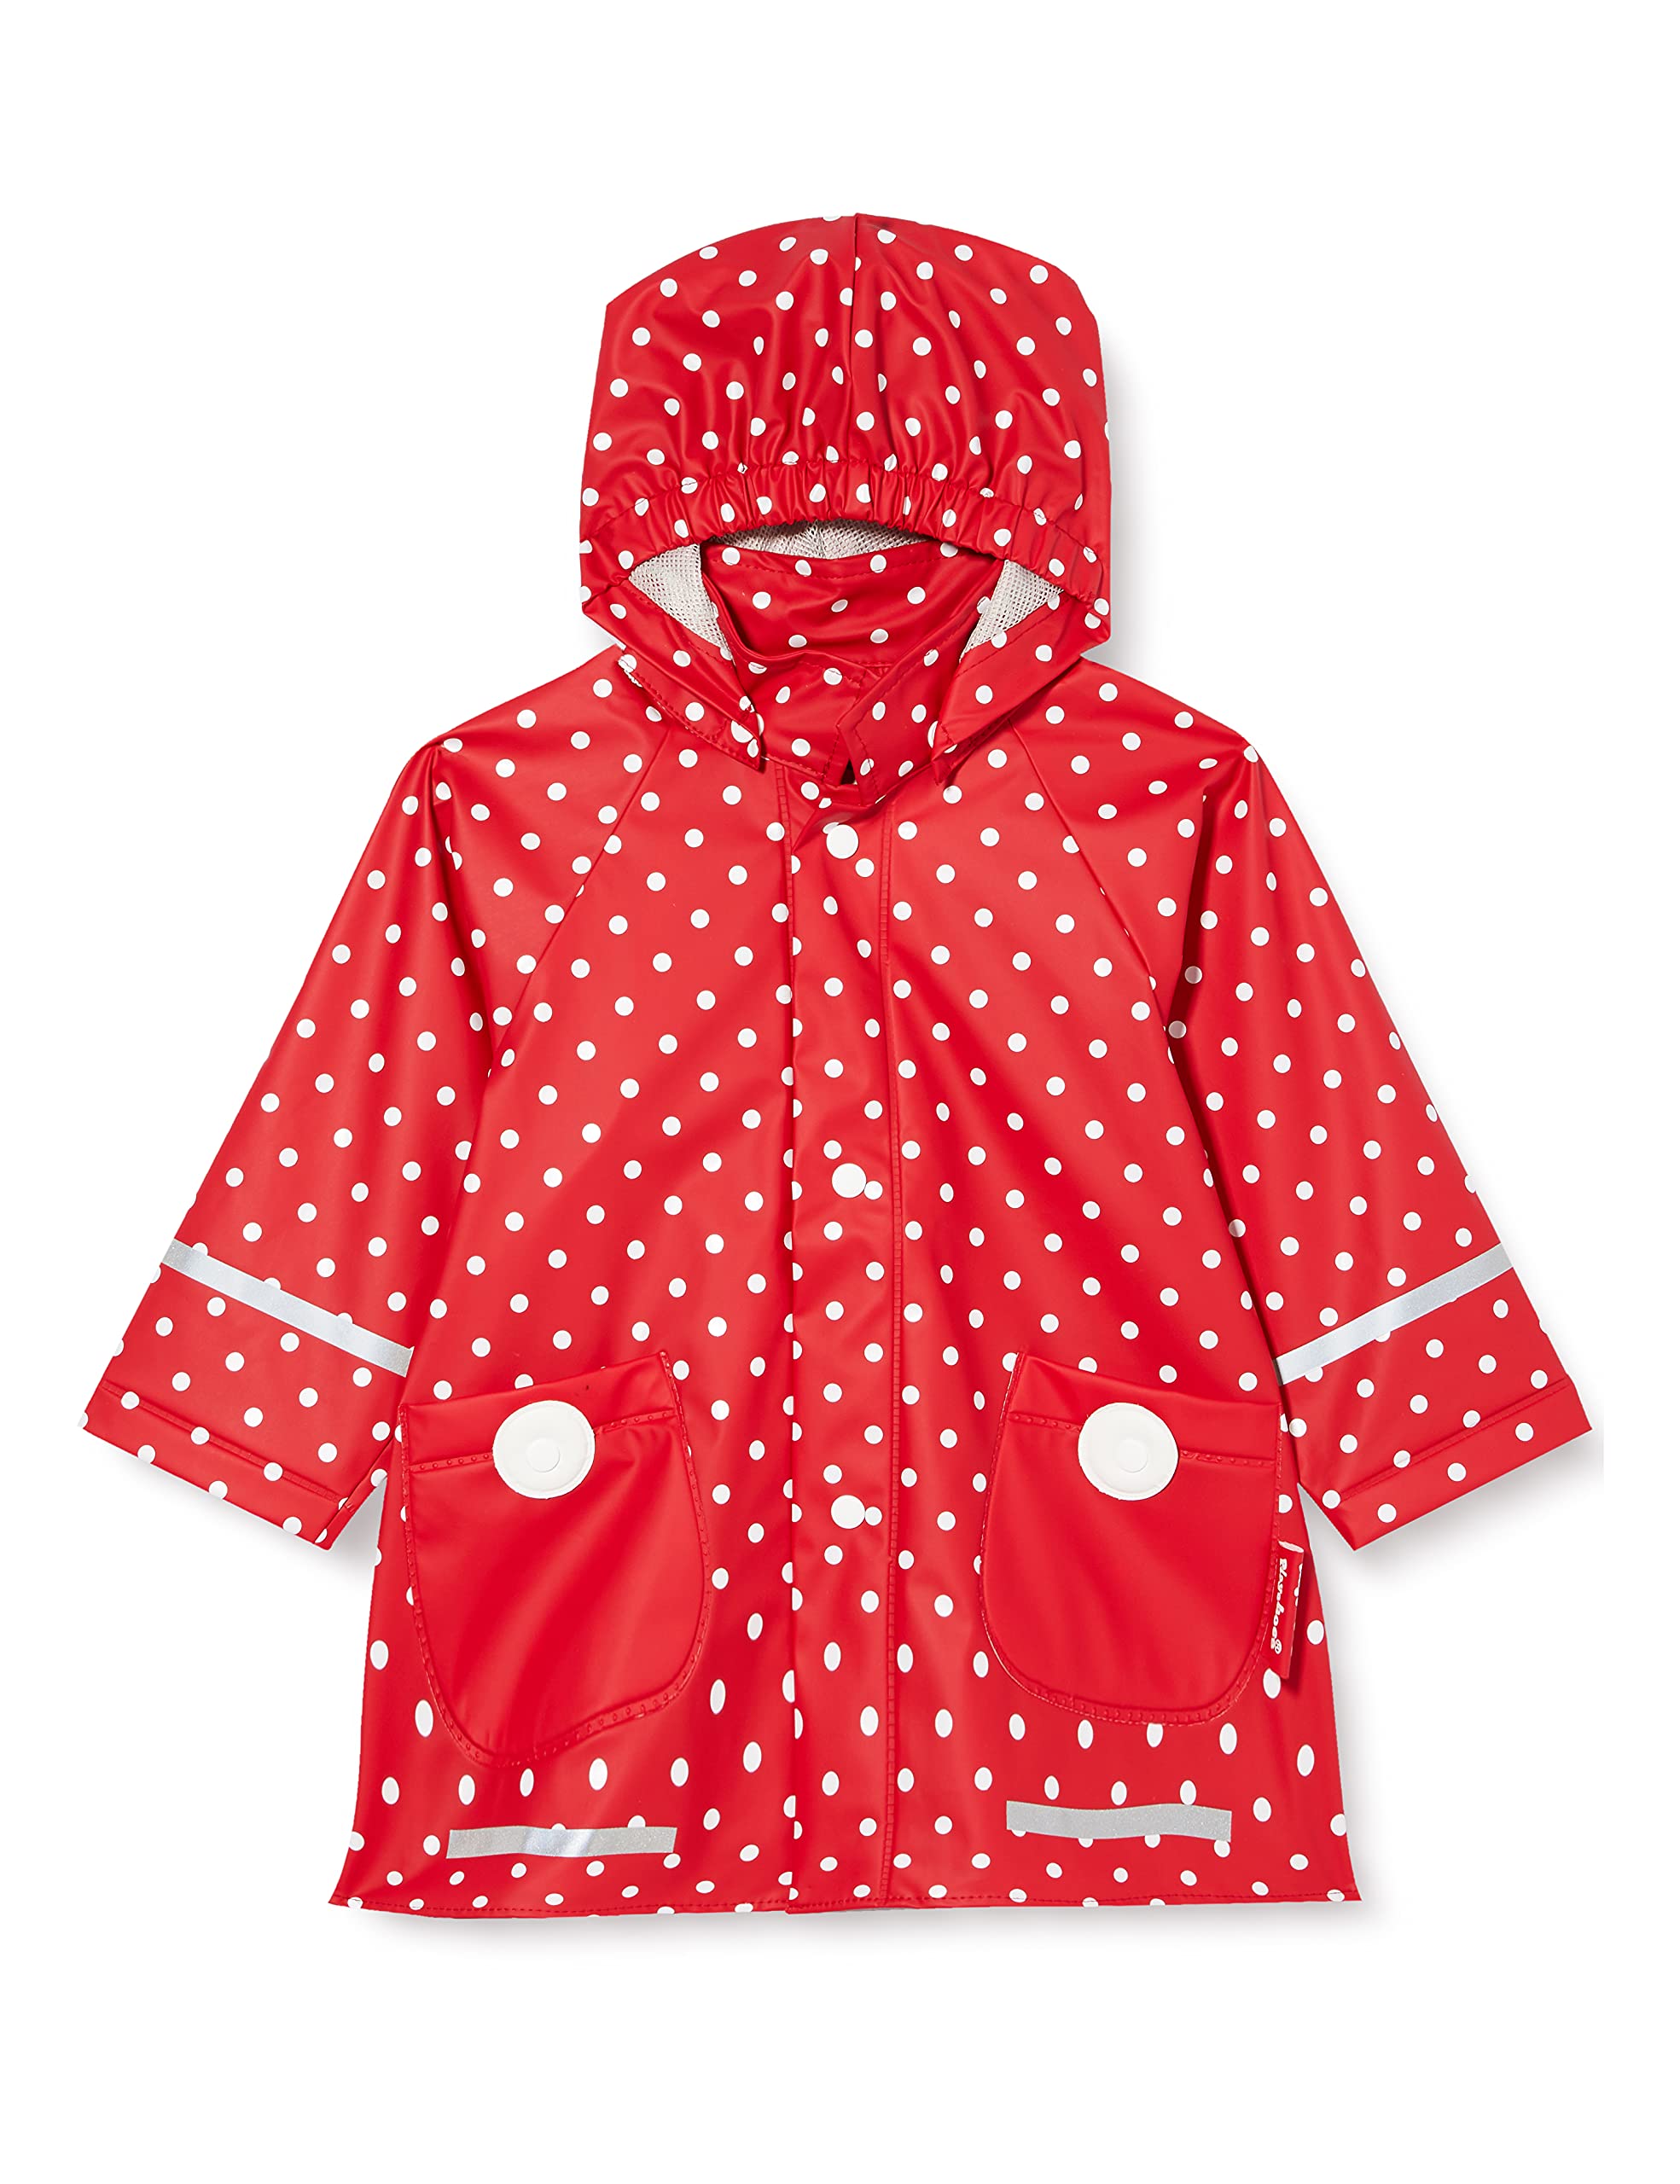 Playshoes Wind- und wasserdicht Regenmantel Regenbekleidung Unisex Kinder,rot Punkte,140